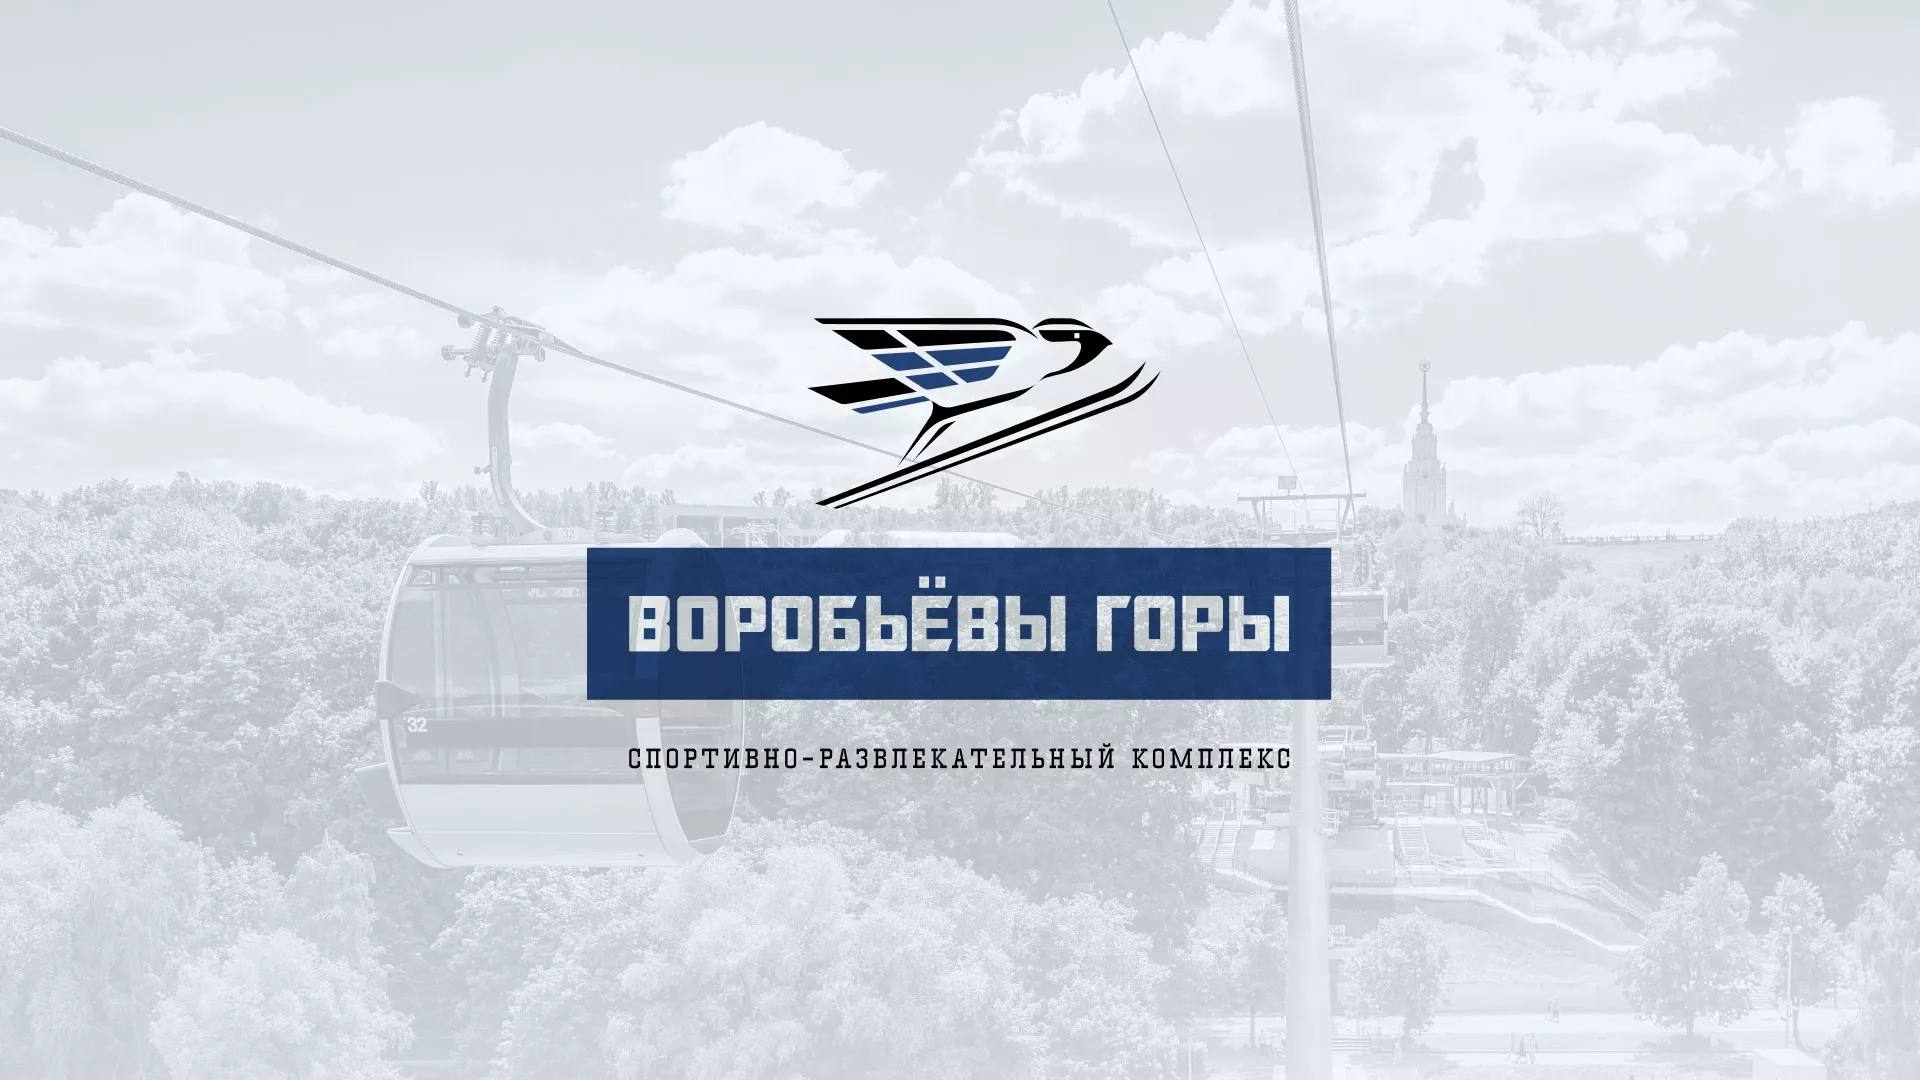 Разработка сайта в Пятигорске для спортивно-развлекательного комплекса «Воробьёвы горы»